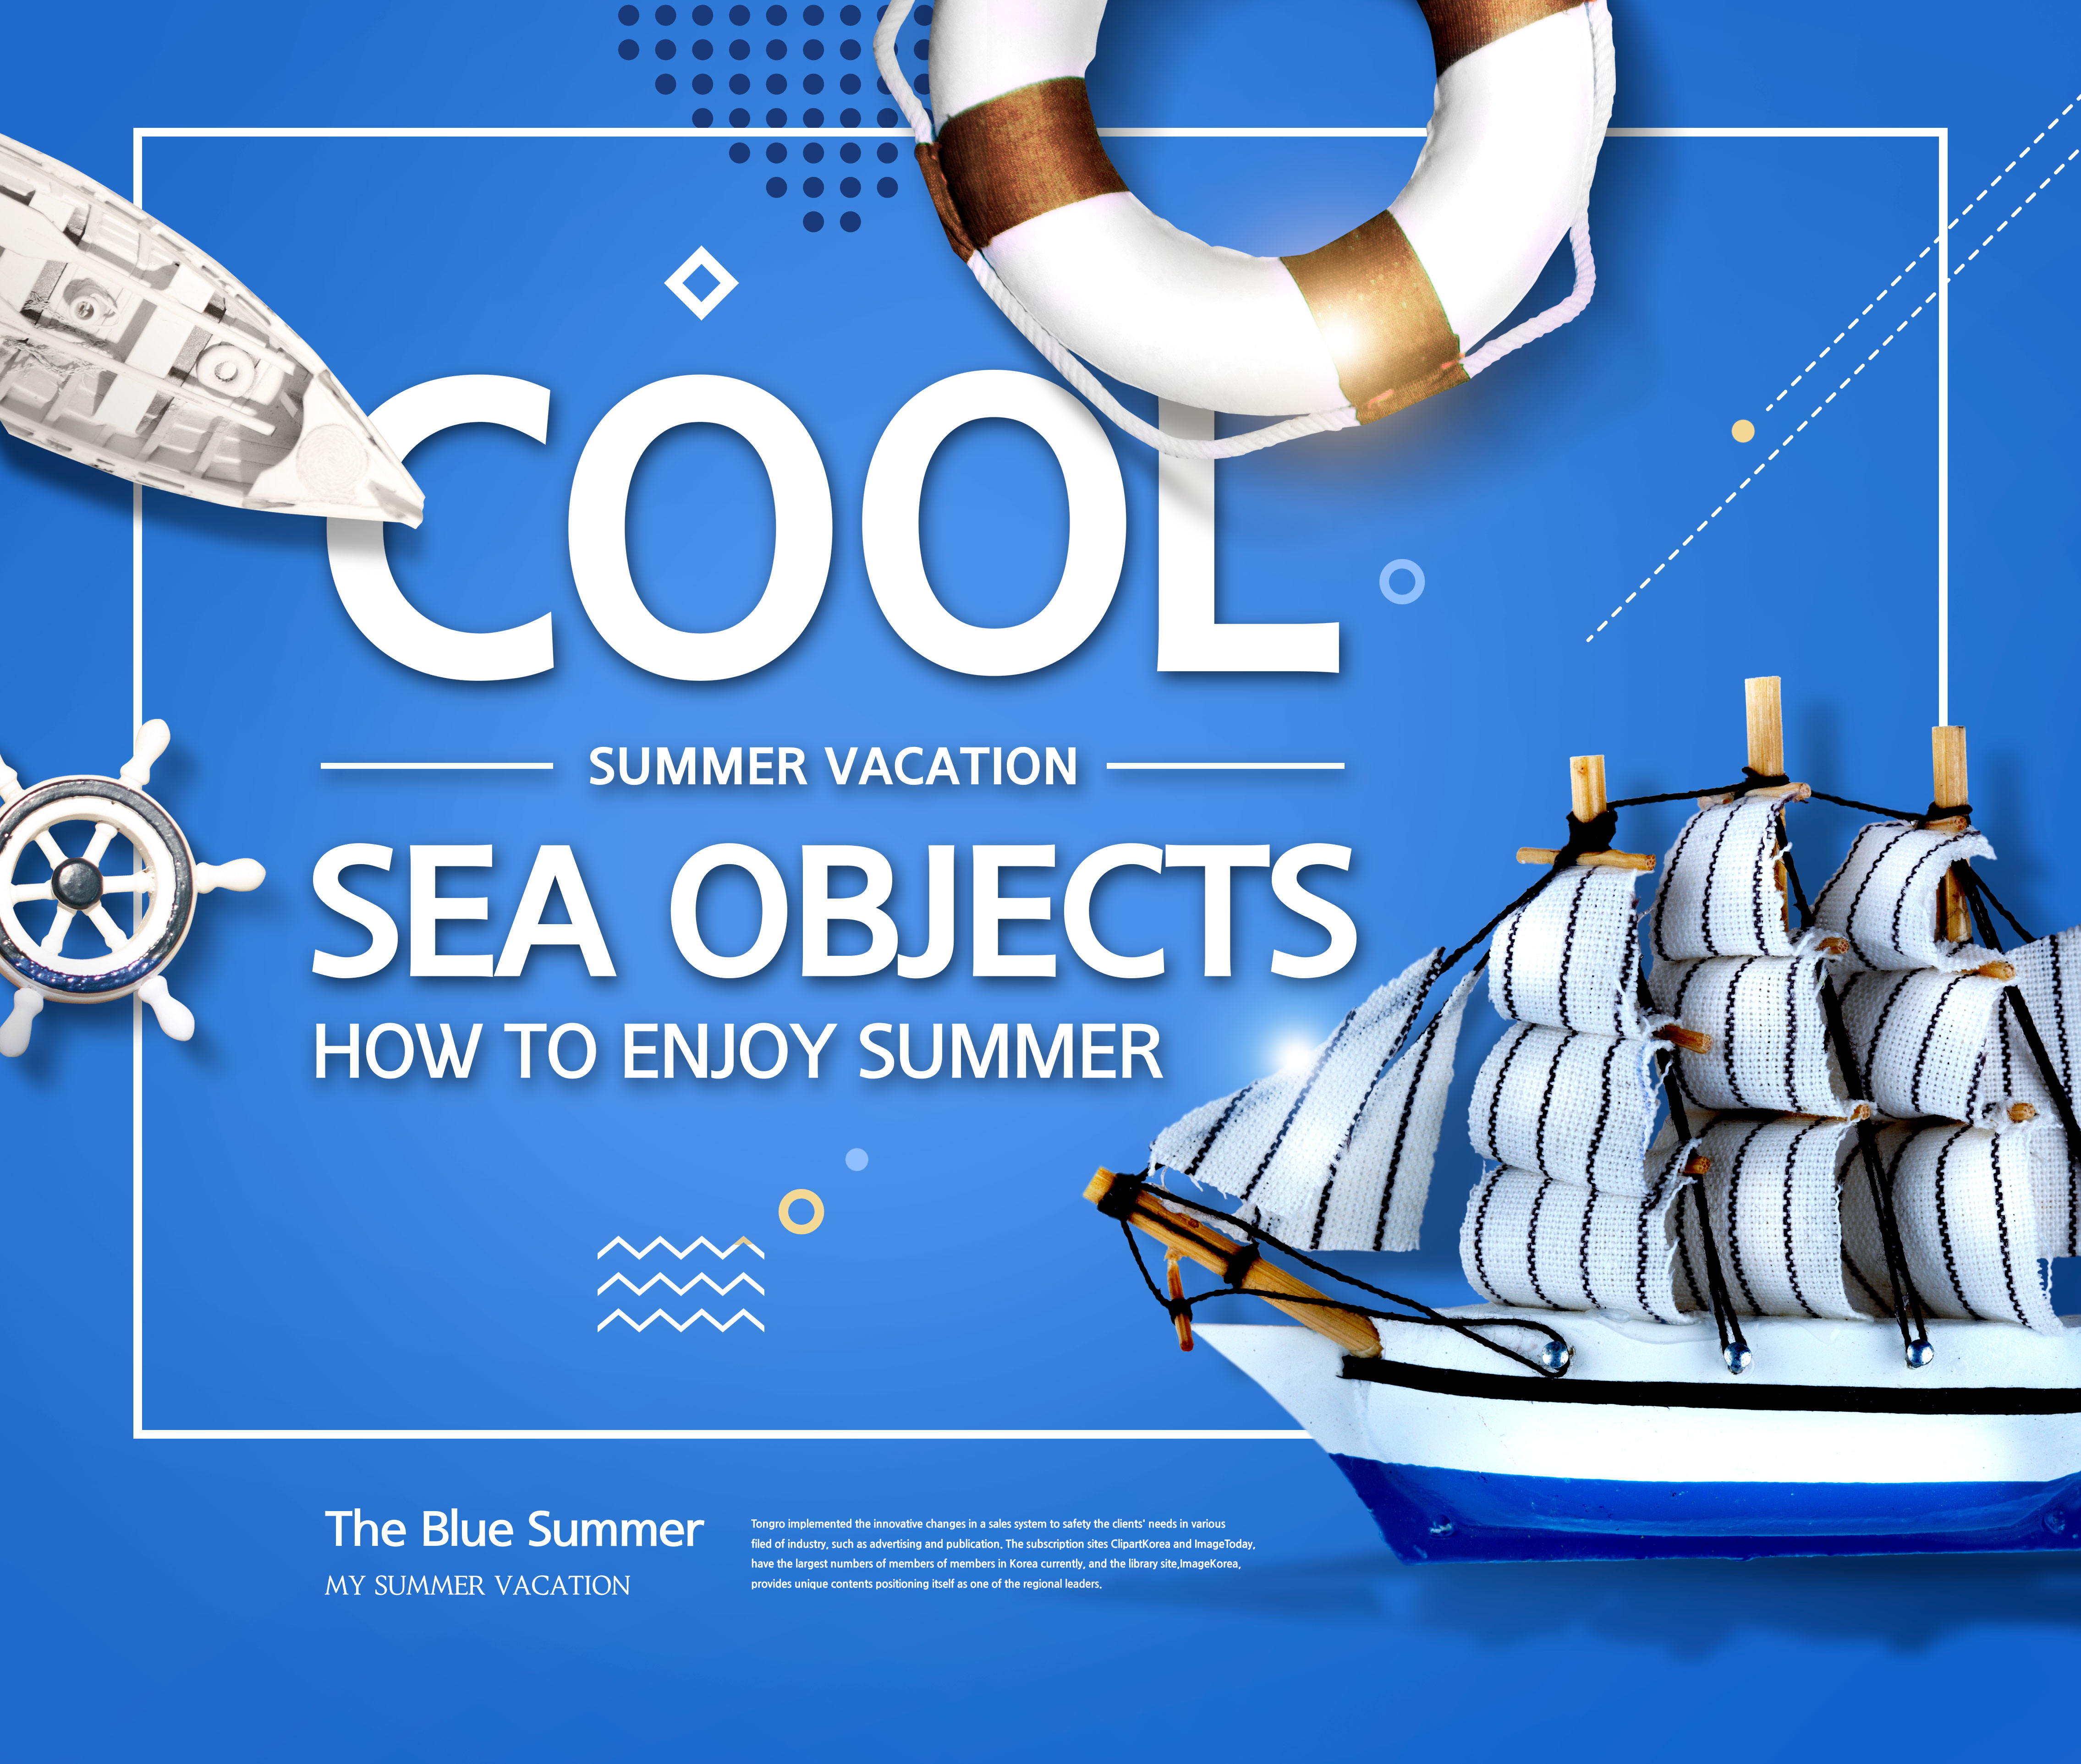 蓝色主题夏季活动促销广告海报套装[PSD]插图(4)